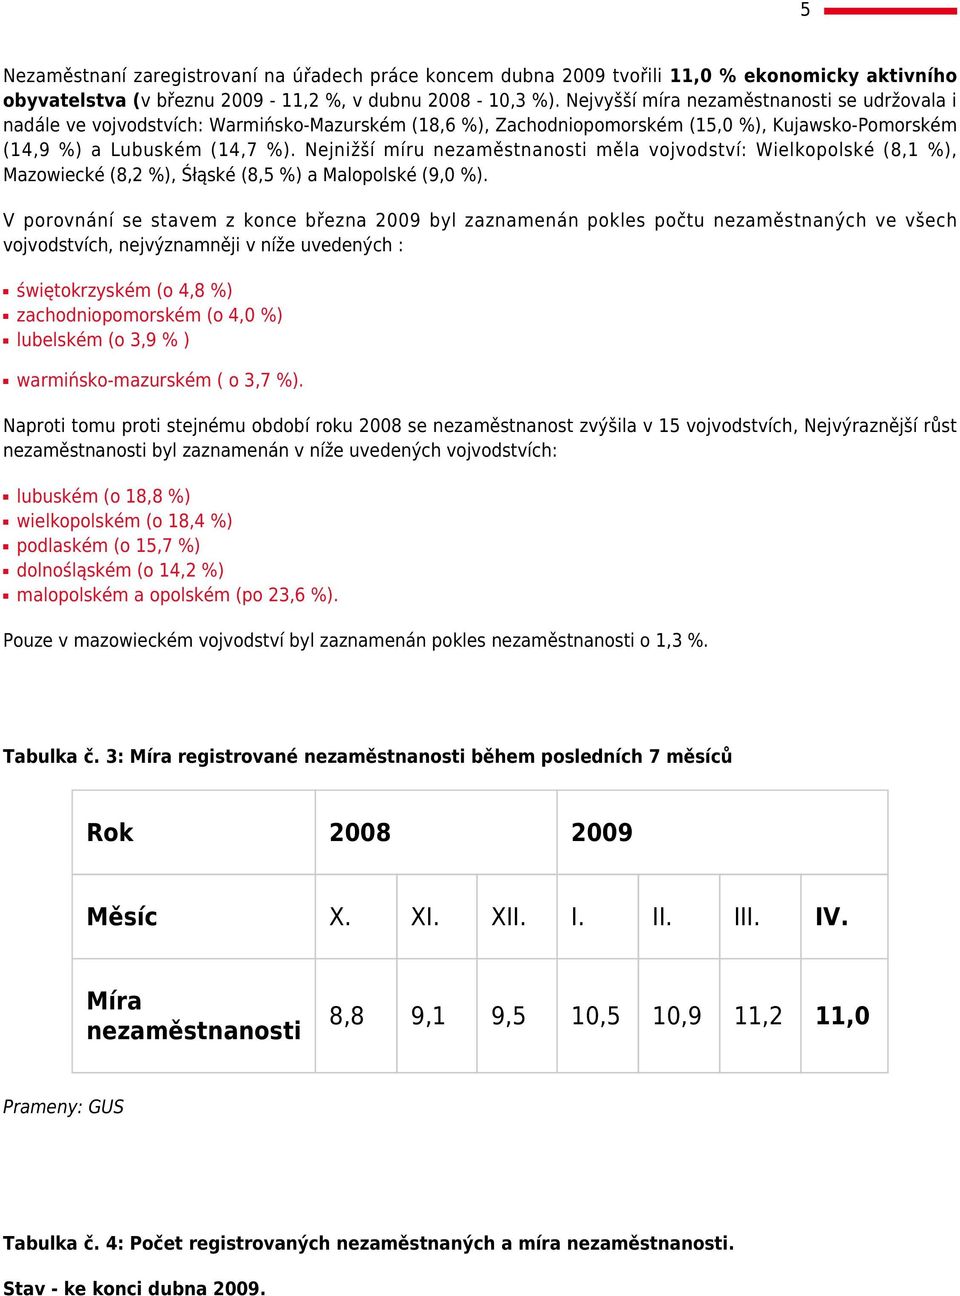 Nejnižší míru nezaměstnanosti měla vojvodství: Wielkopolské (8, %), Mazowiecké (8,2 %), Śłąské (8,5 %) a Malopolské (9,0 %).